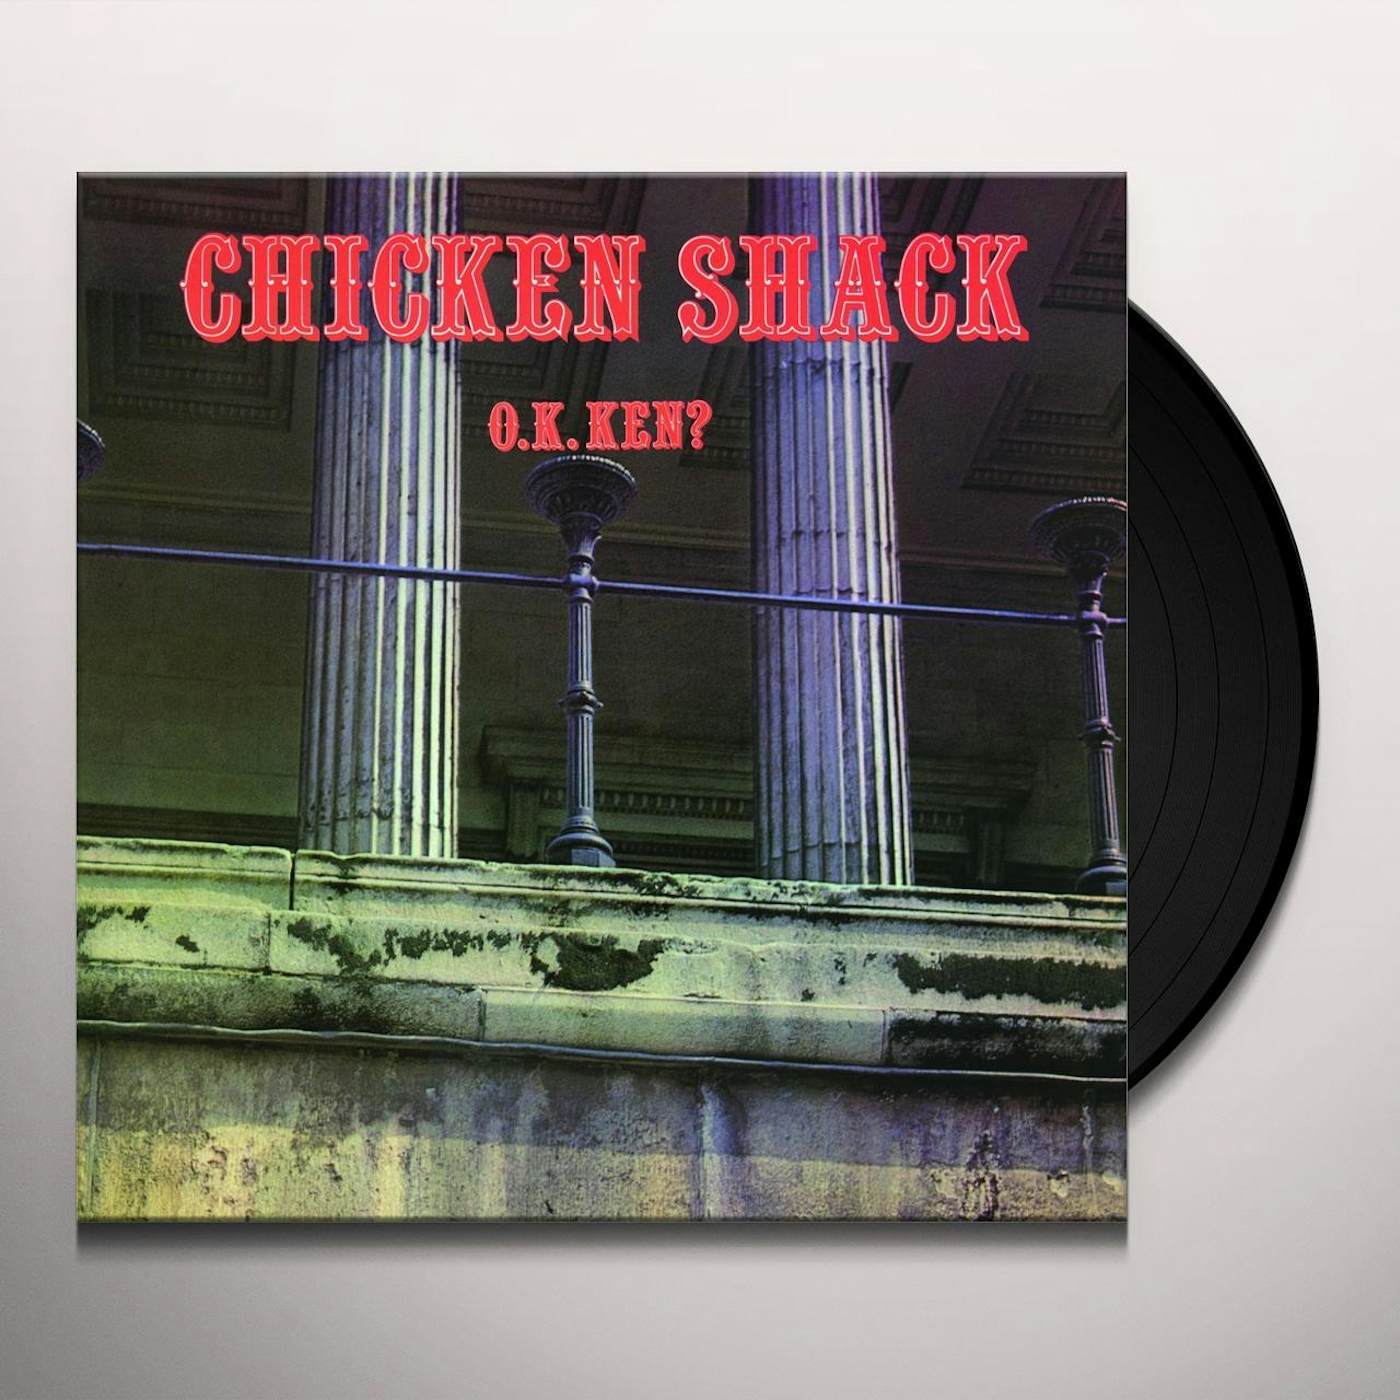 Chicken Shack O.K. Ken? Vinyl Record